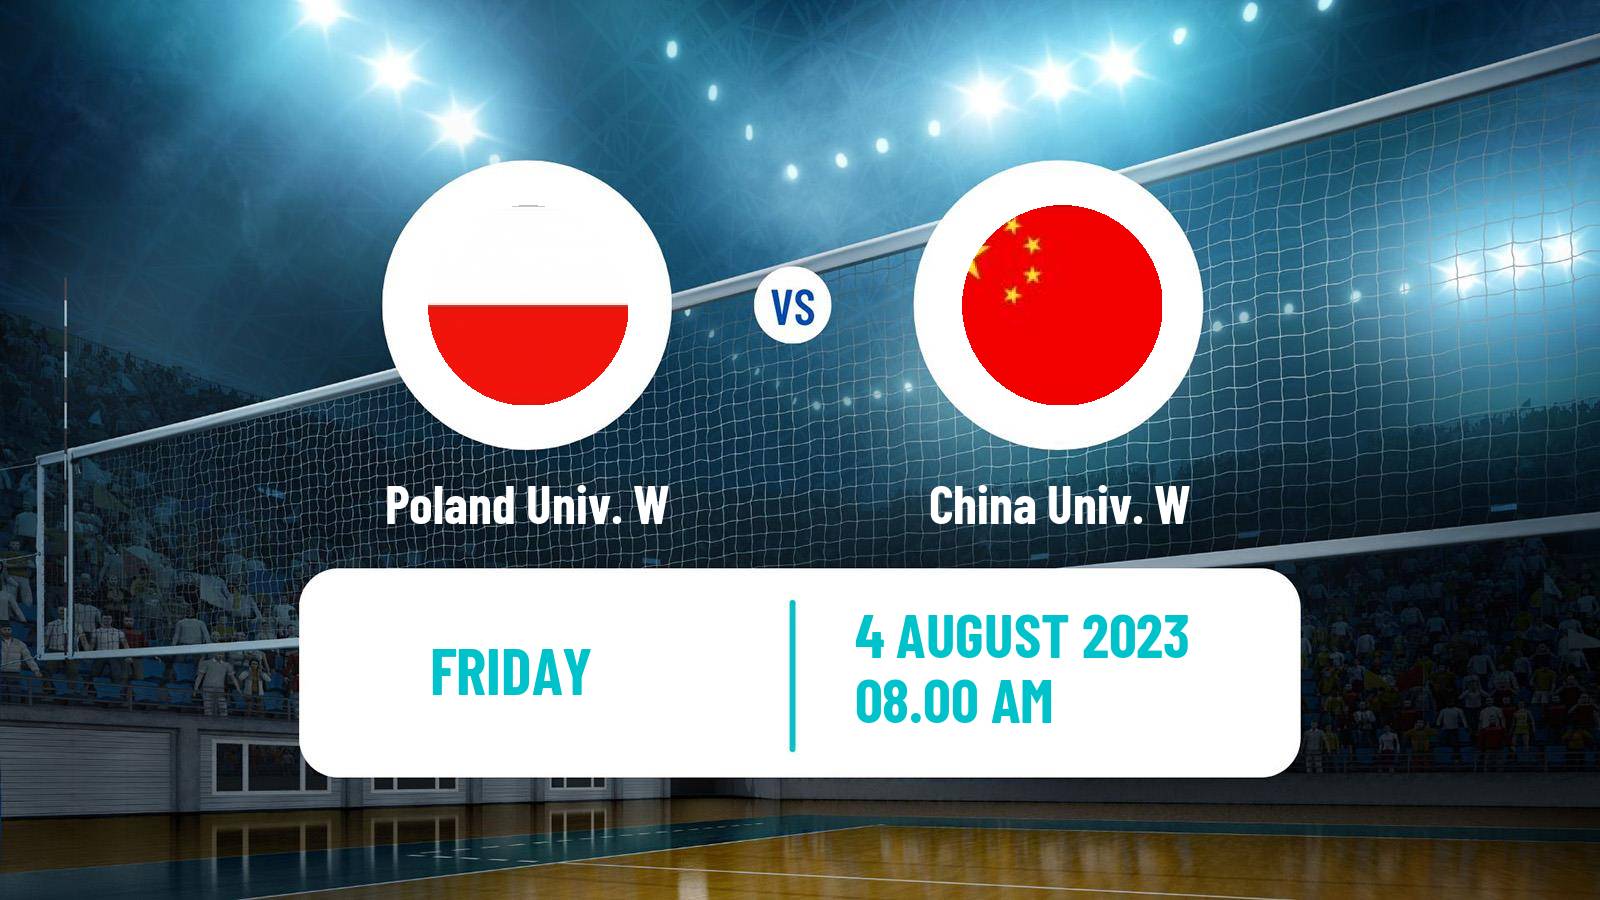 Volleyball Universiade Volleyball Women Poland Univ. W - China Univ. W